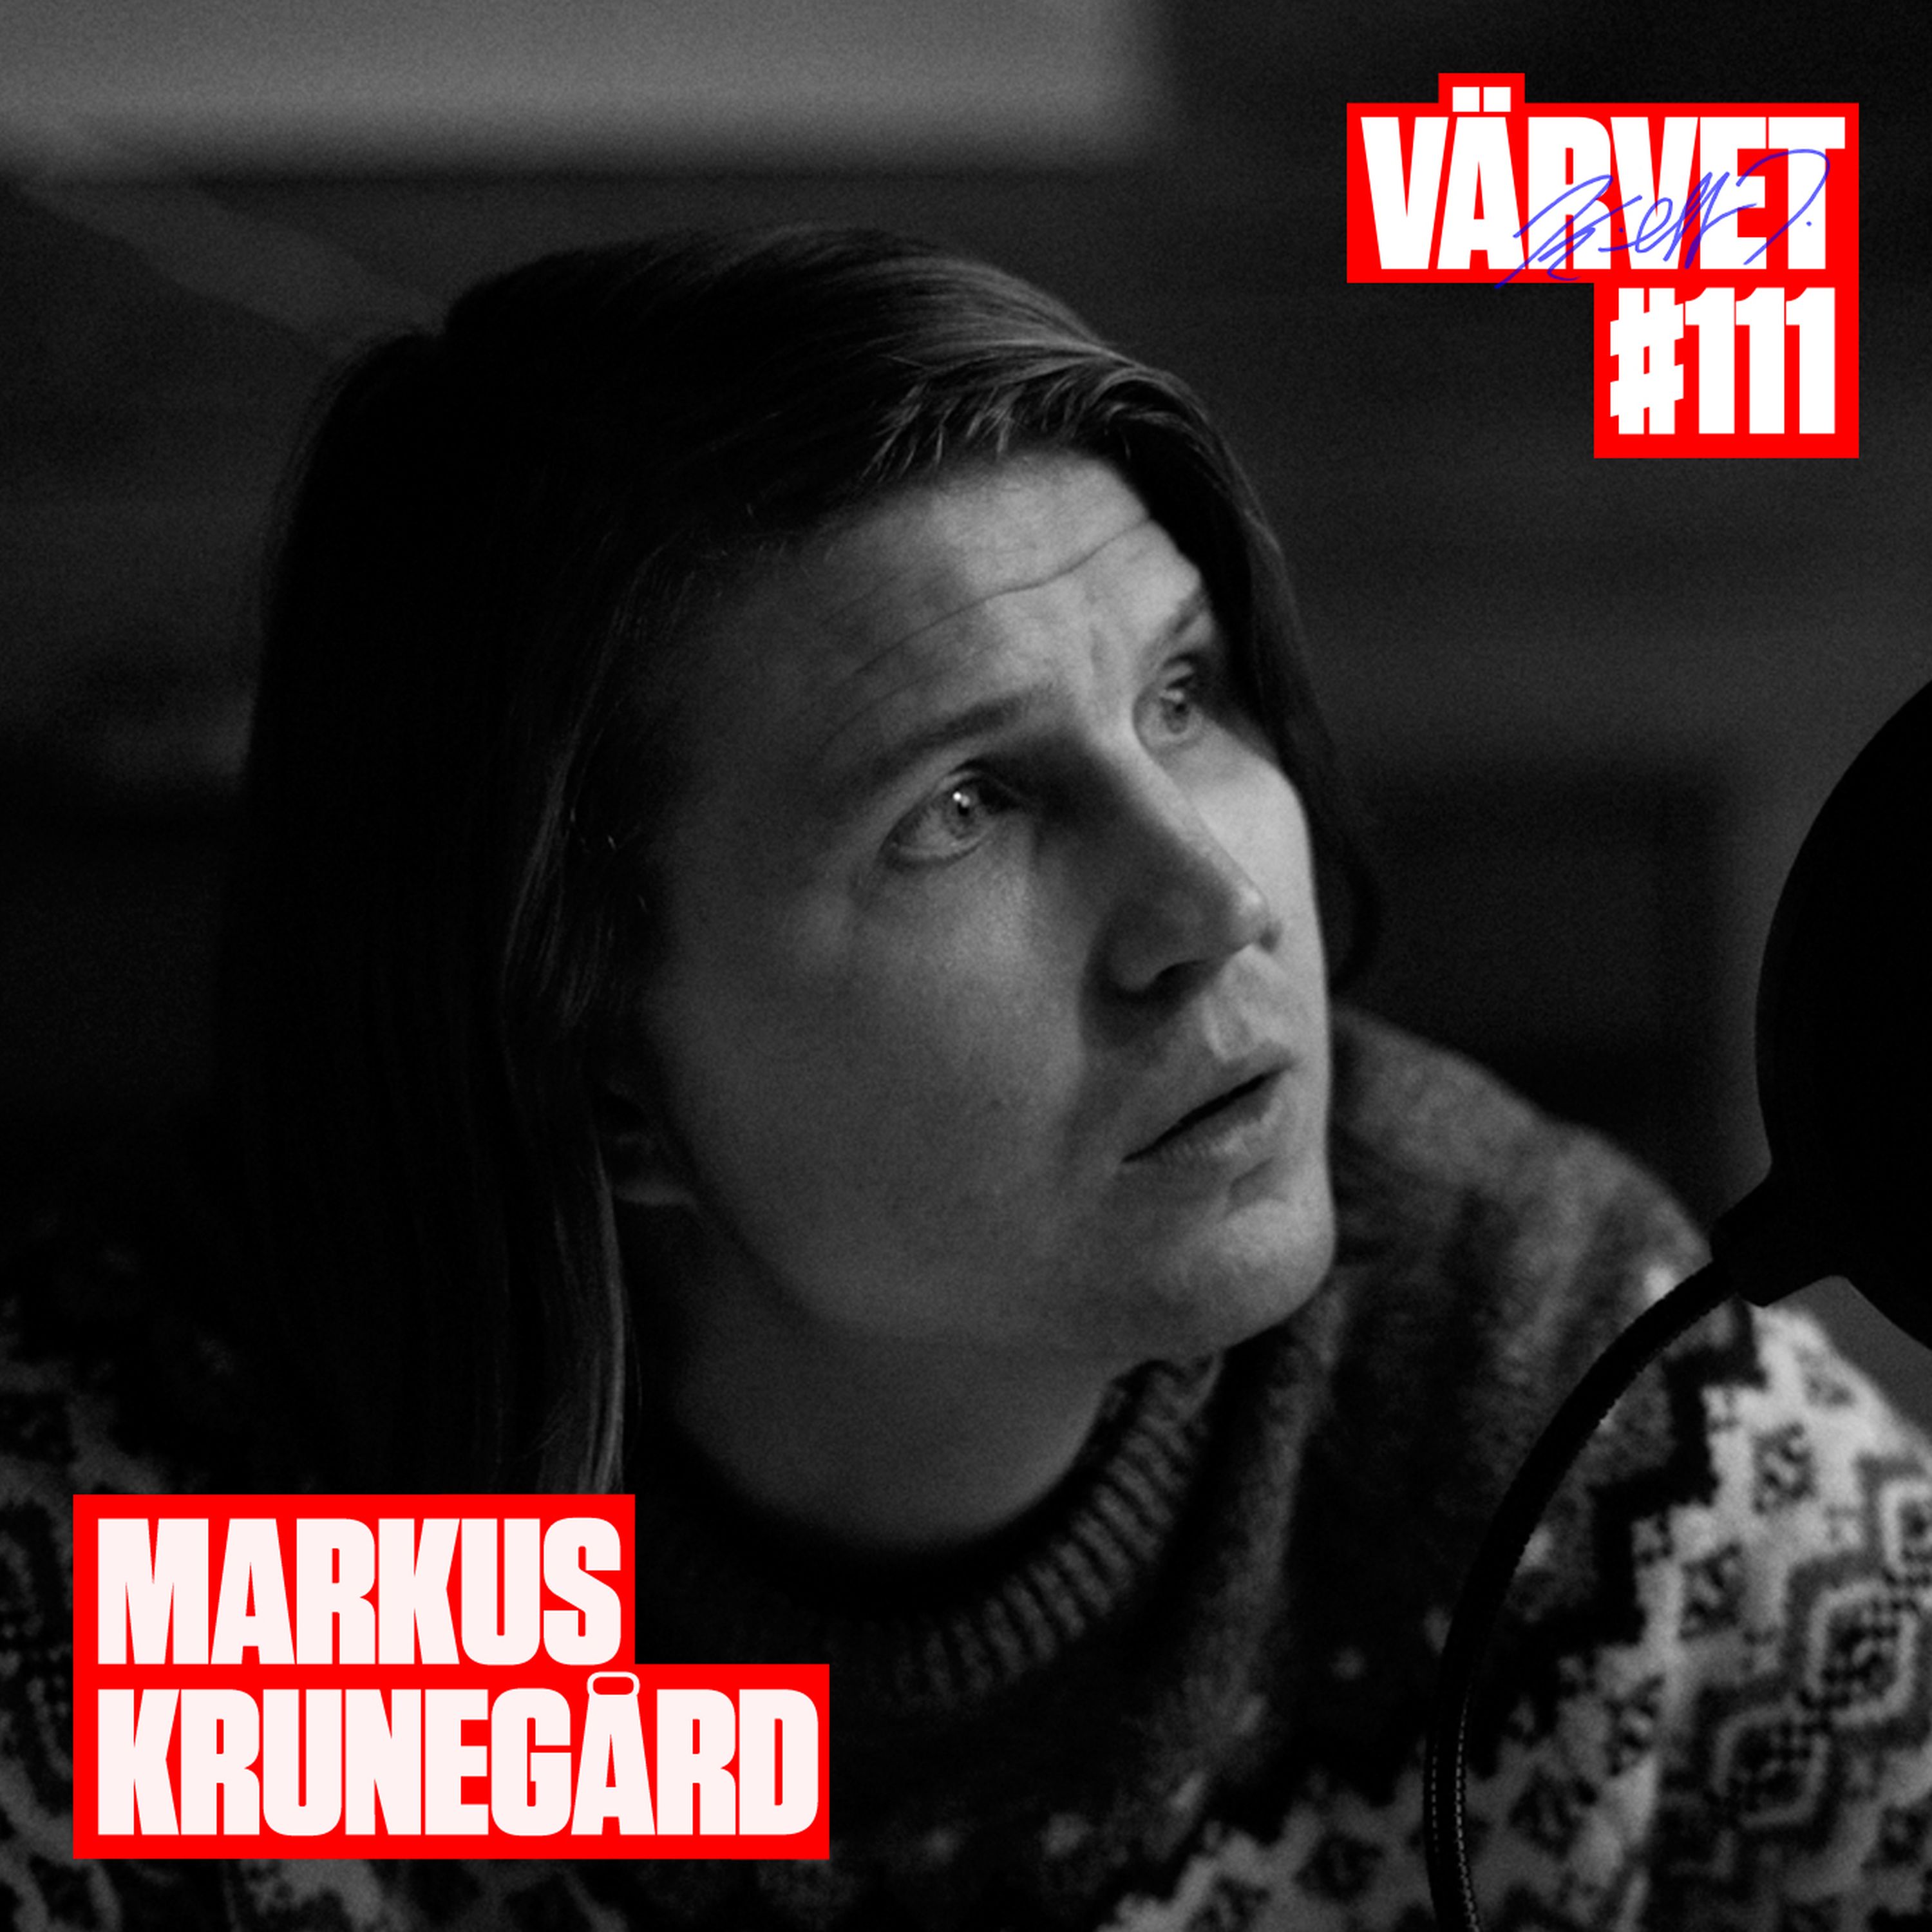 #111: Markus Krunegård